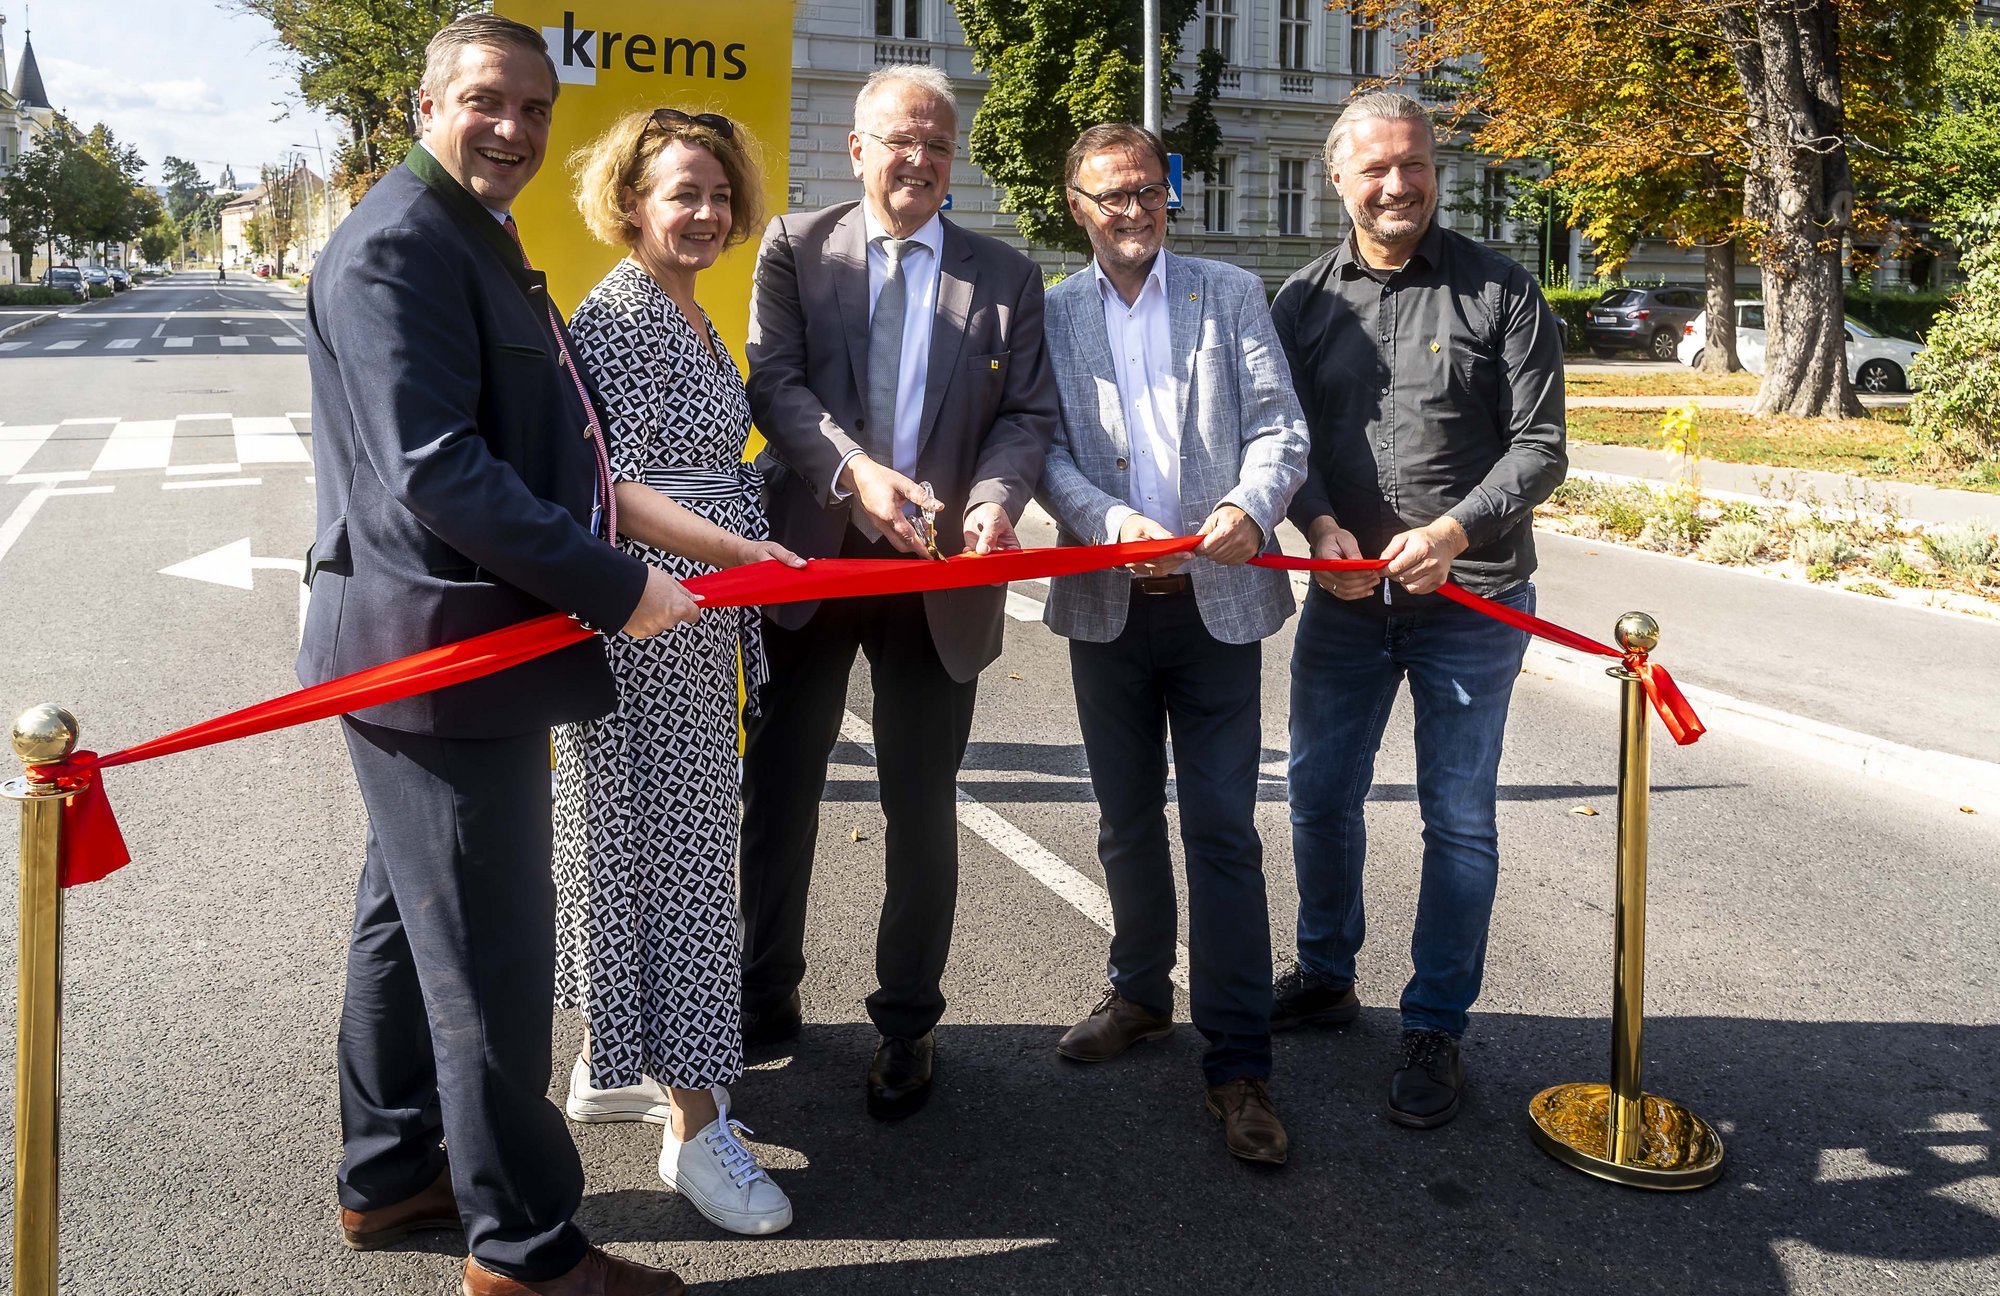 Eröffnung Ringstraße – Ein Fest für alle Kremser:innen